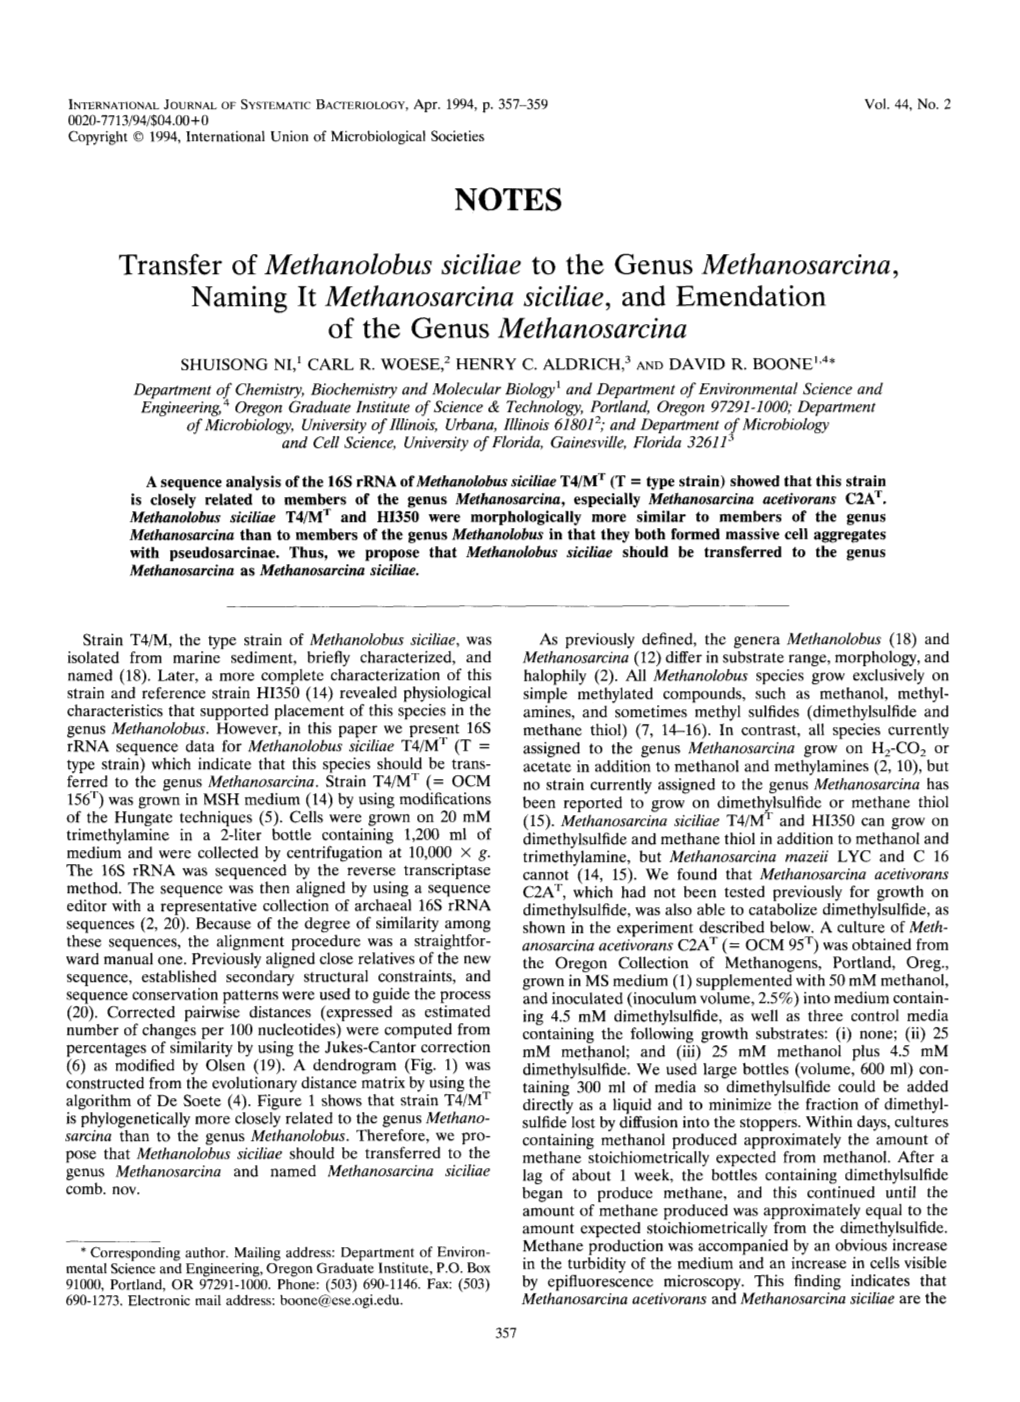 Transfer of Methanolobus Siciliae to the Genus Methanosarcina, Naming It Methanosarcina Siciliae, and Emendation of the Genus Methanosarcina